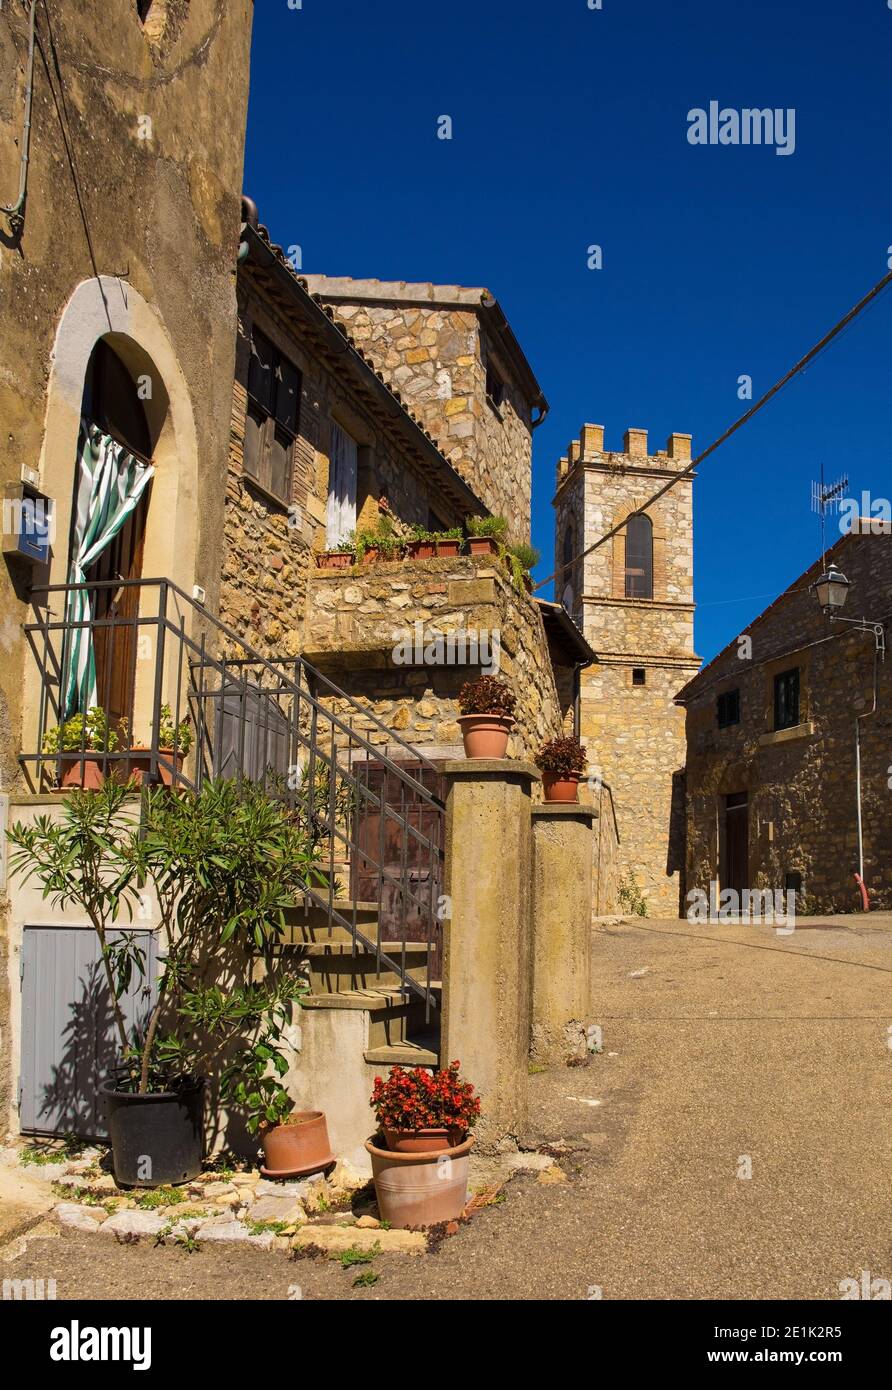 Une rue résidentielle dans le village médiéval historique de Poggio Capanne près de Manciano dans la province de Grosseto en Toscane, Italie. Église du 15e siècle Banque D'Images